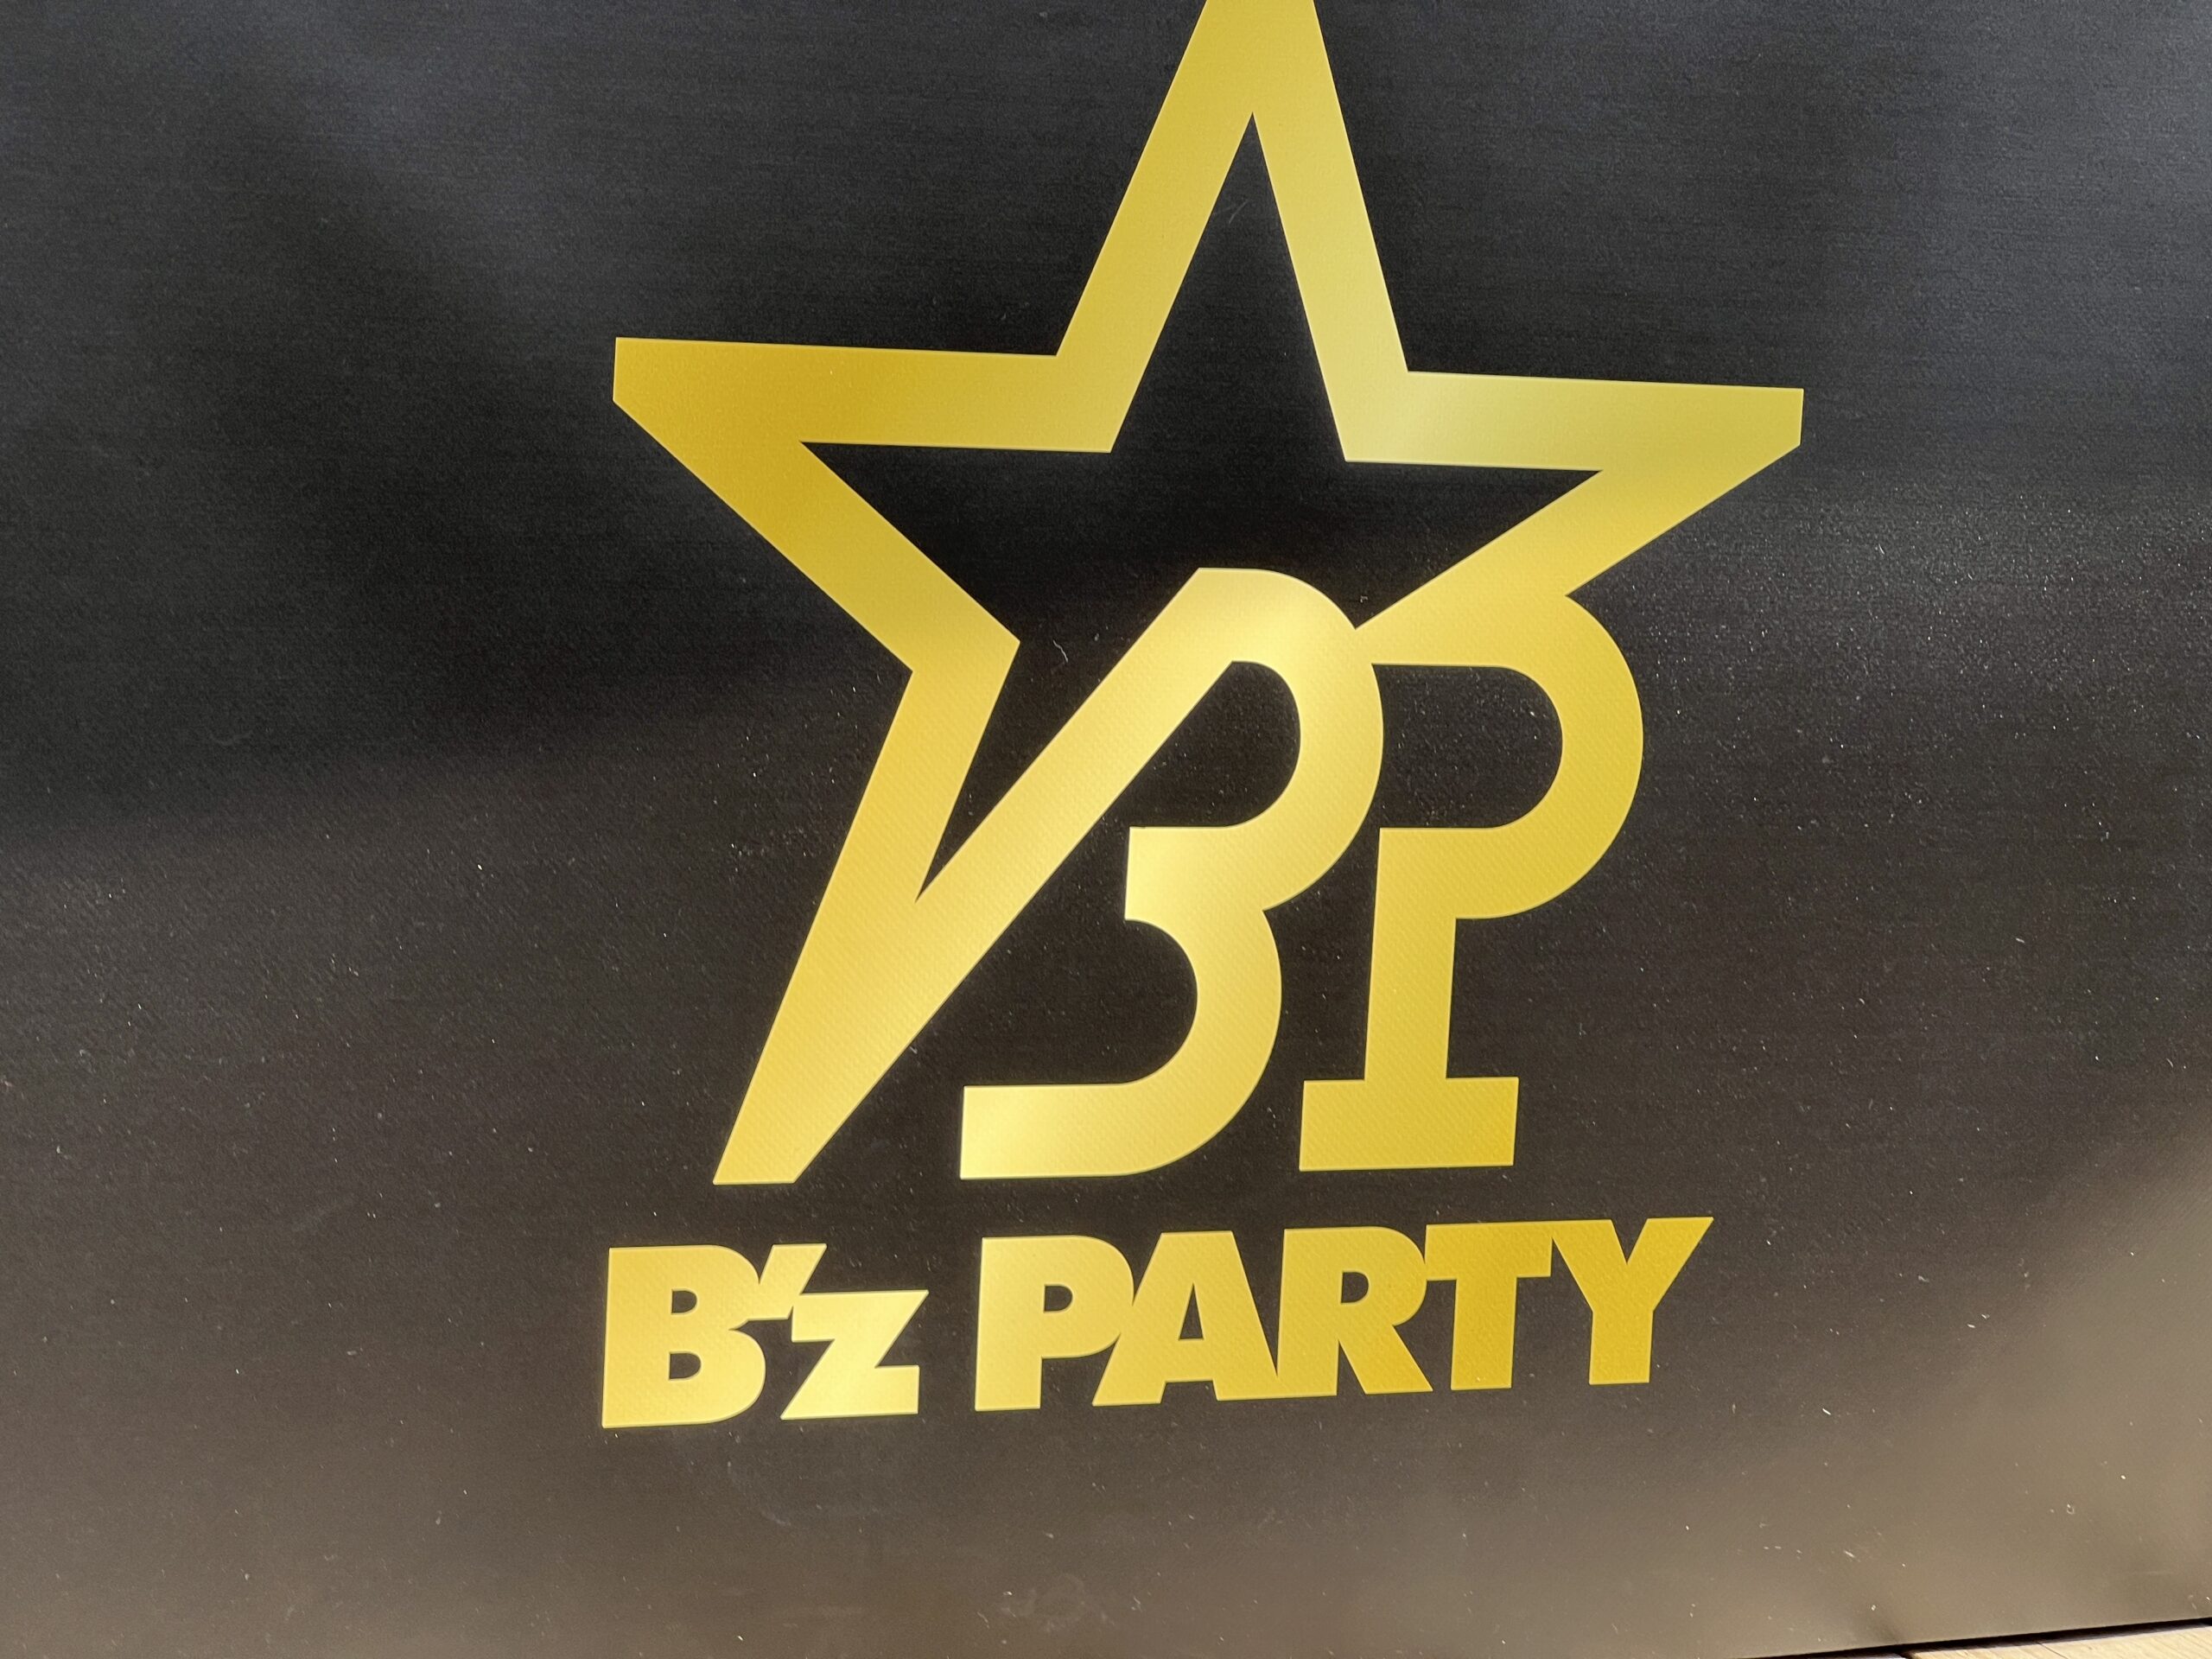 B'zのオフィシャルファンクラブ『B'z PARTY』のロゴの写真